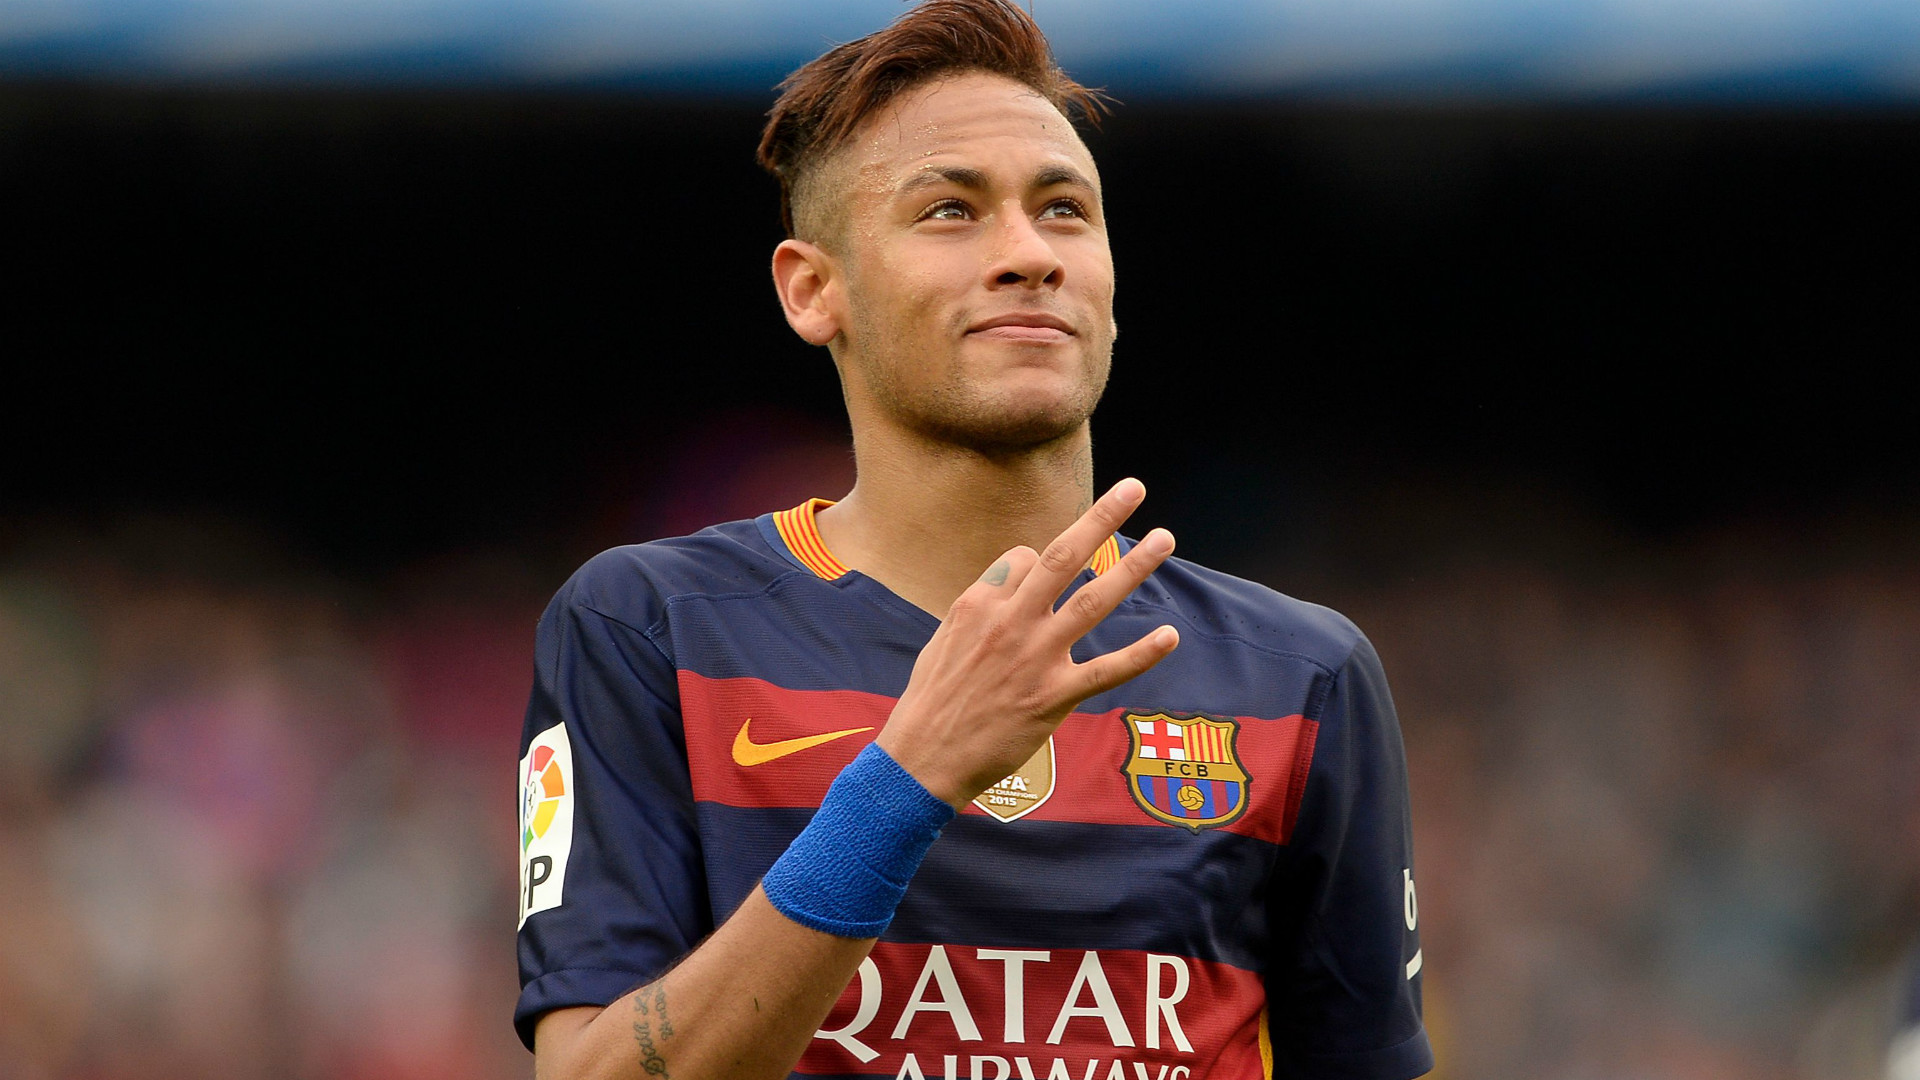 FC Barcelona Neymar Hd Wallpapers 1080p. Neymar 4K